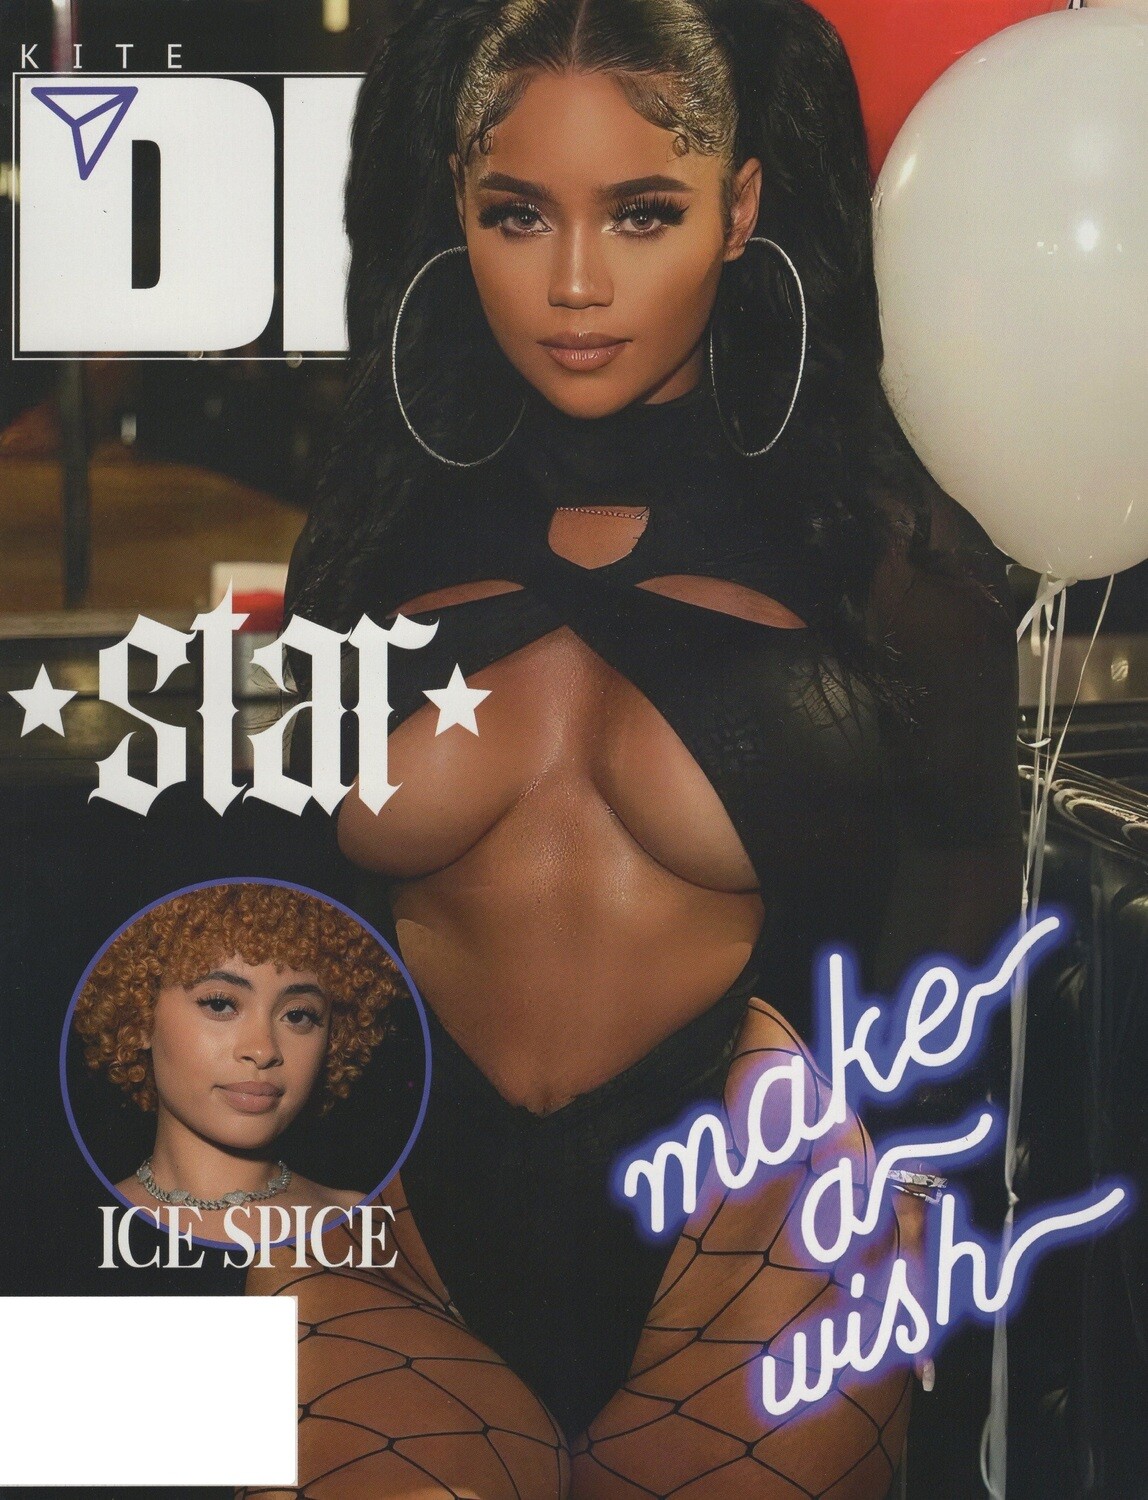 KITE DM Magazine Issue 5 - Star Ice Spice Daalischus